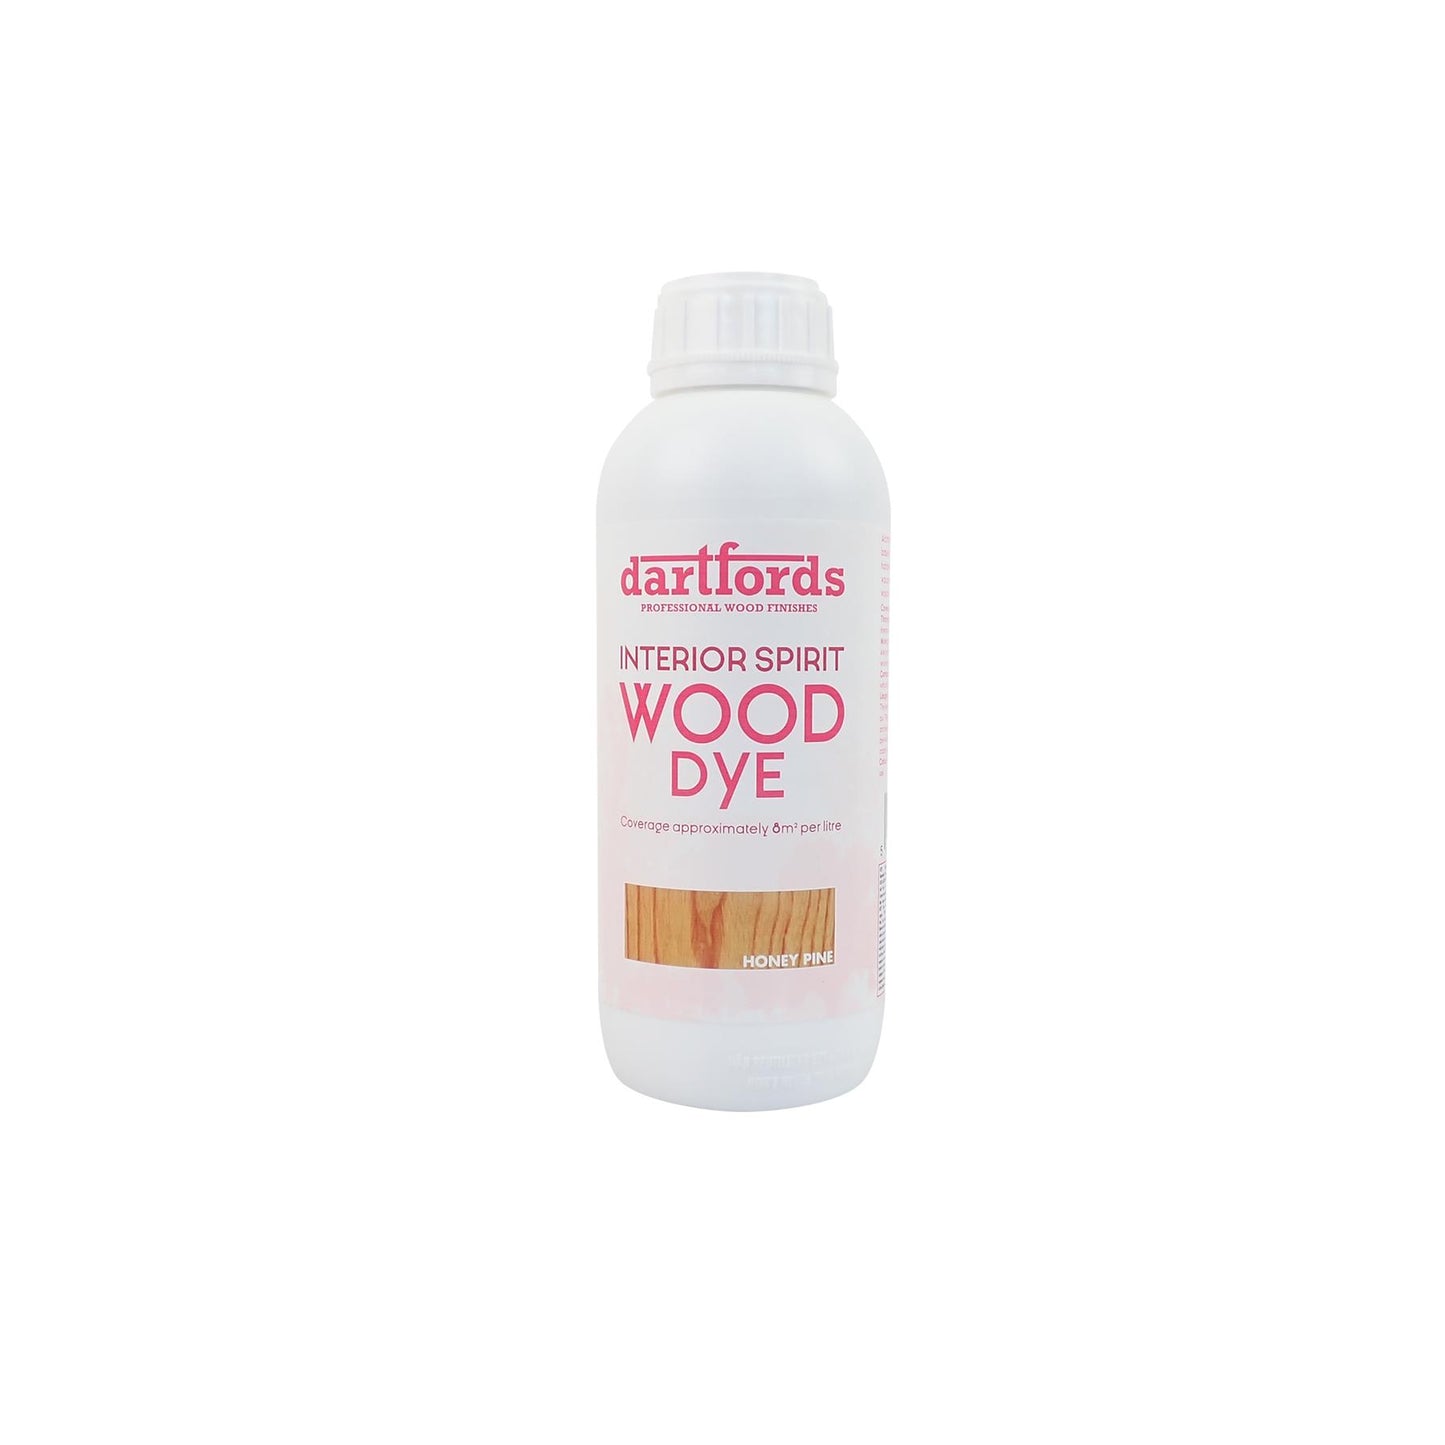 dartfords Honey Pine Interior Spirit Based Wood Dye - 1 litre Tin